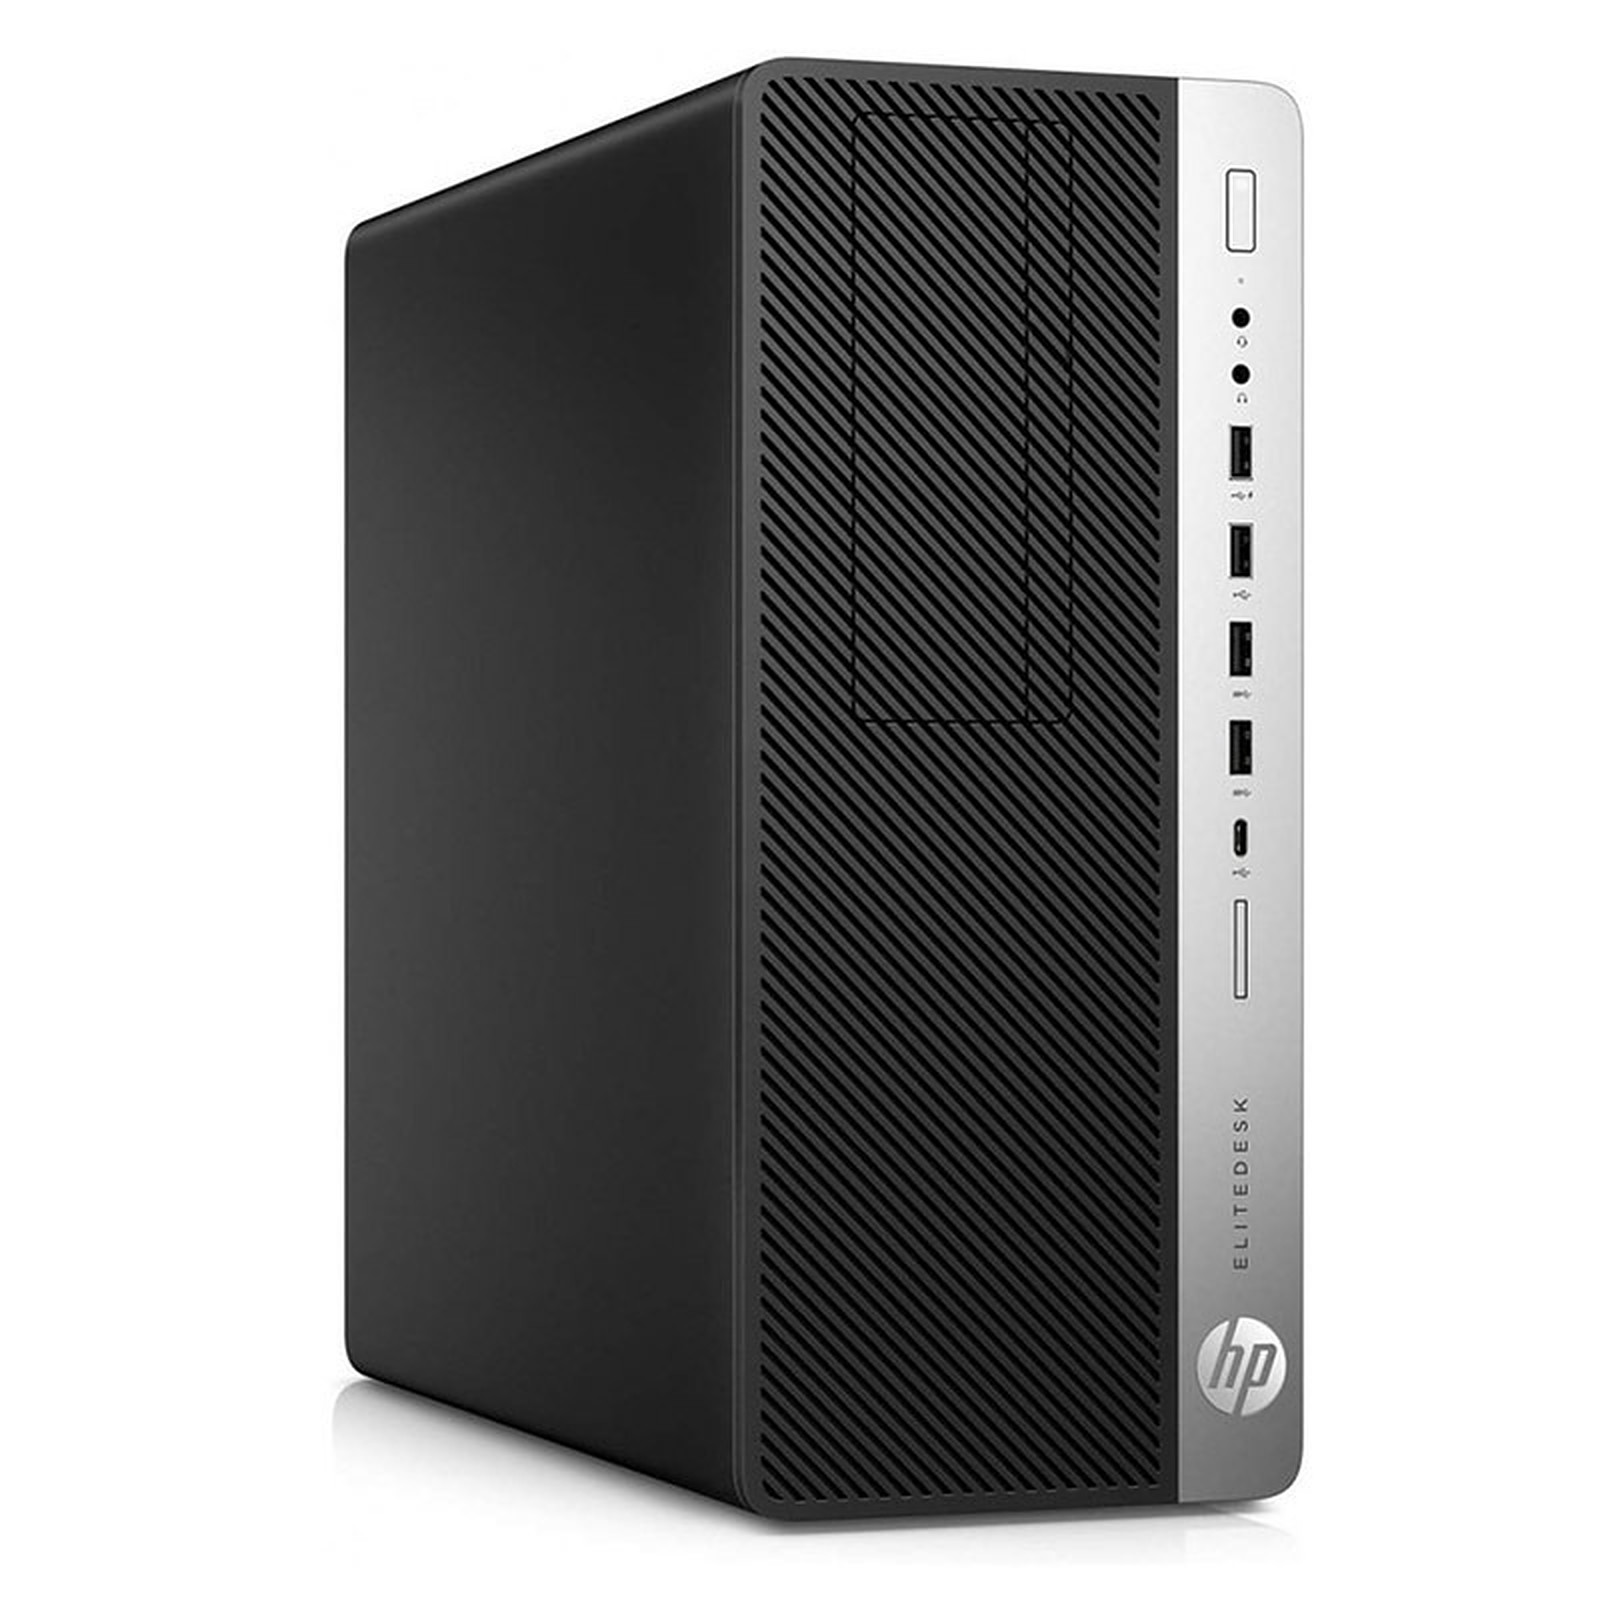 HP LPG-800G3 (I5651698S) · Reconditionne - PC de bureau reconditionne HP